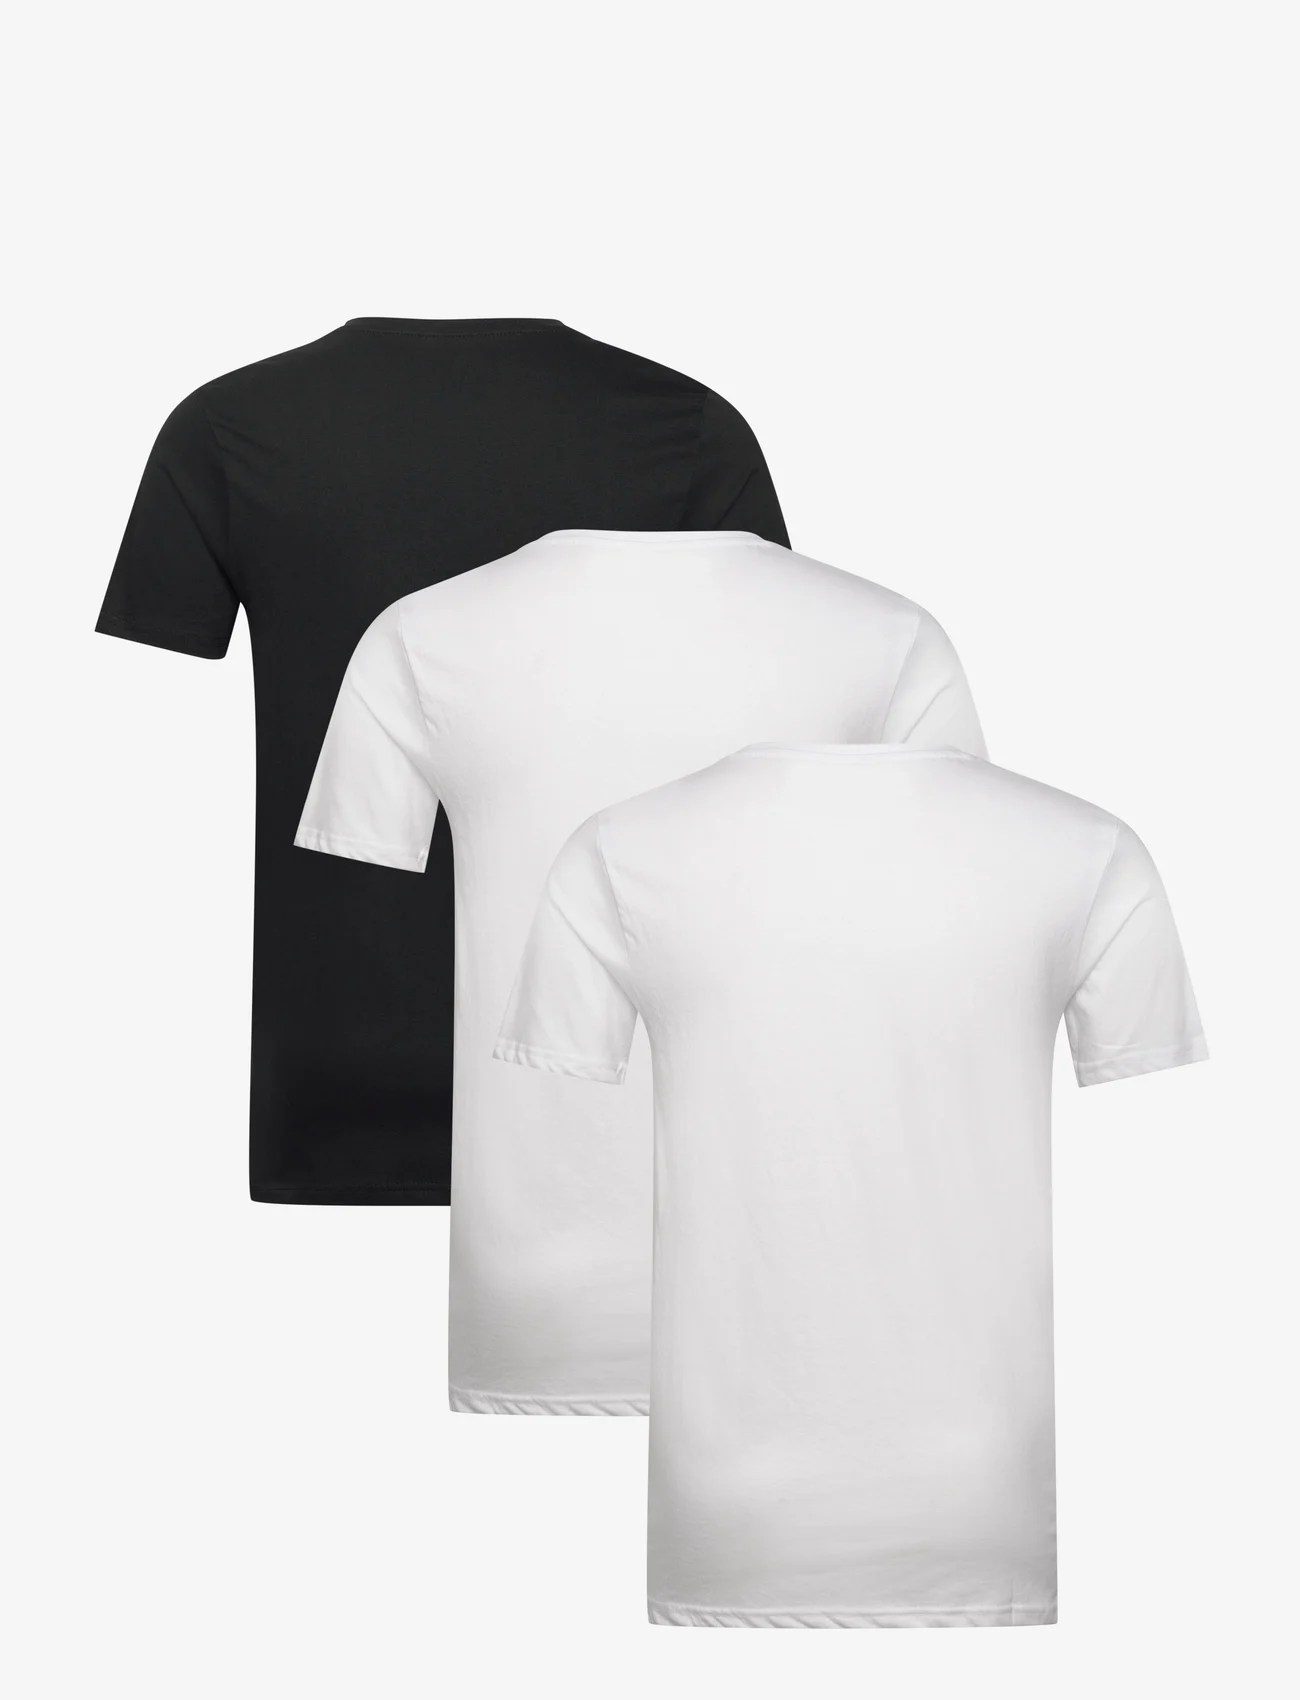 Denim project - 3 PACK T-SHIRTS - die niedrigsten preise - 2x white 1x black - 1